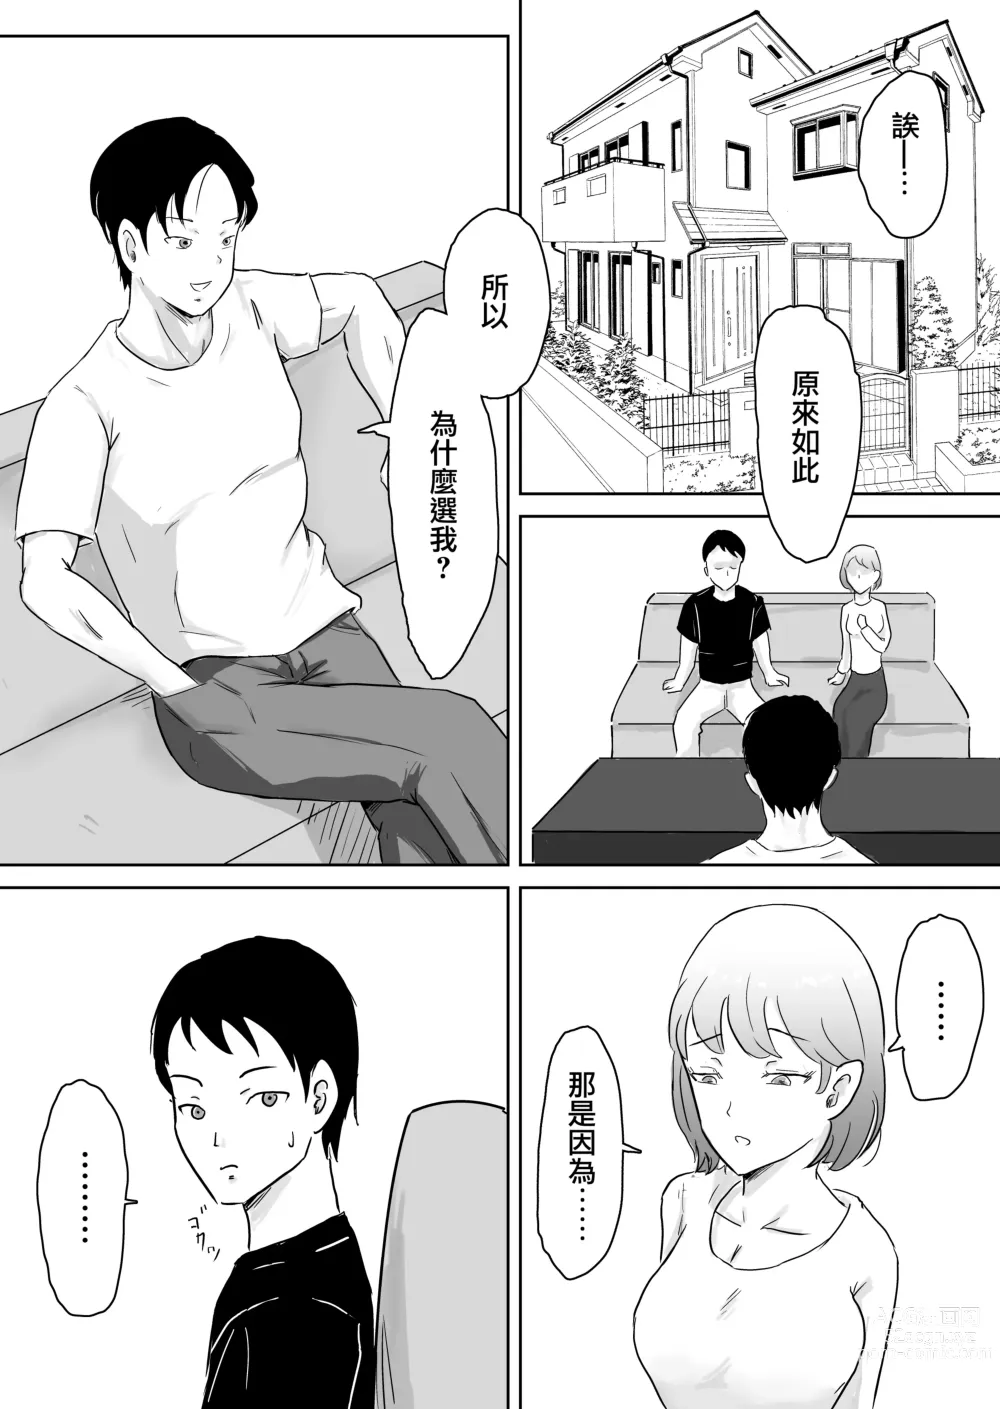 Page 9 of doujinshi 早知不該將妻子拱手讓人